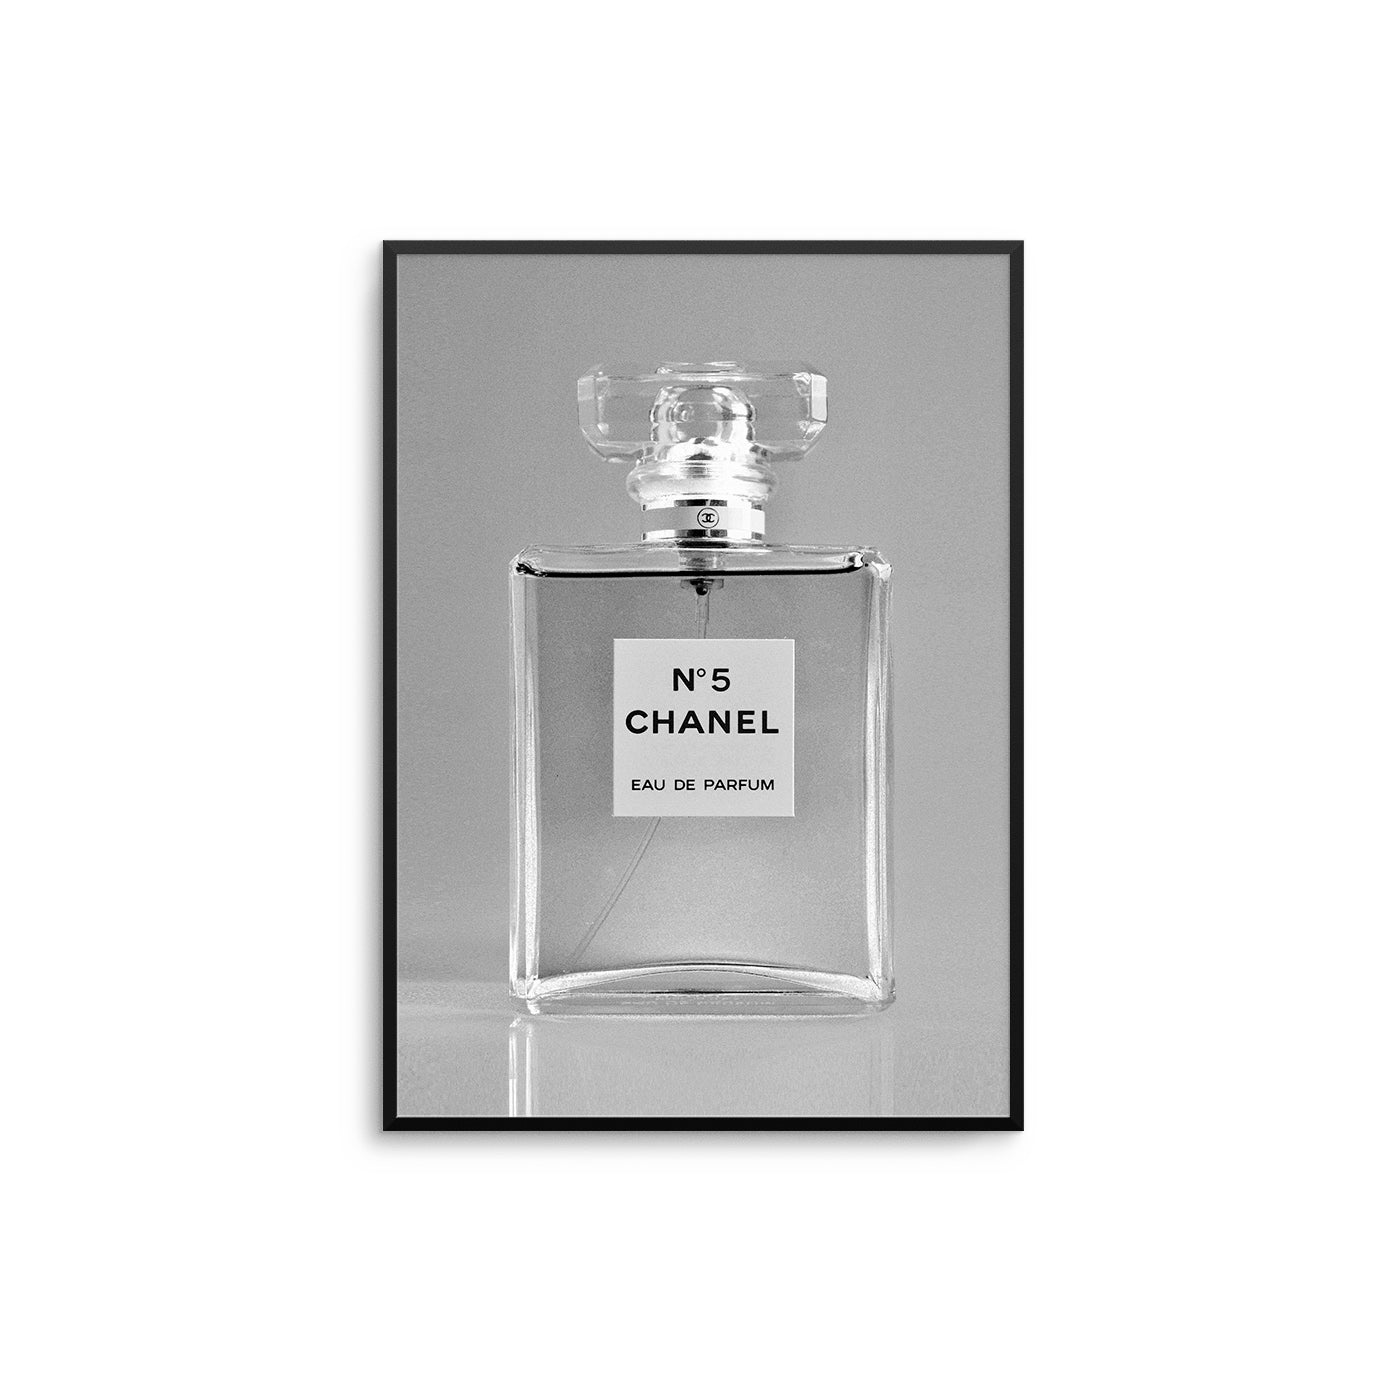 Monochrome CC Perfume Bottle - D'Luxe Prints